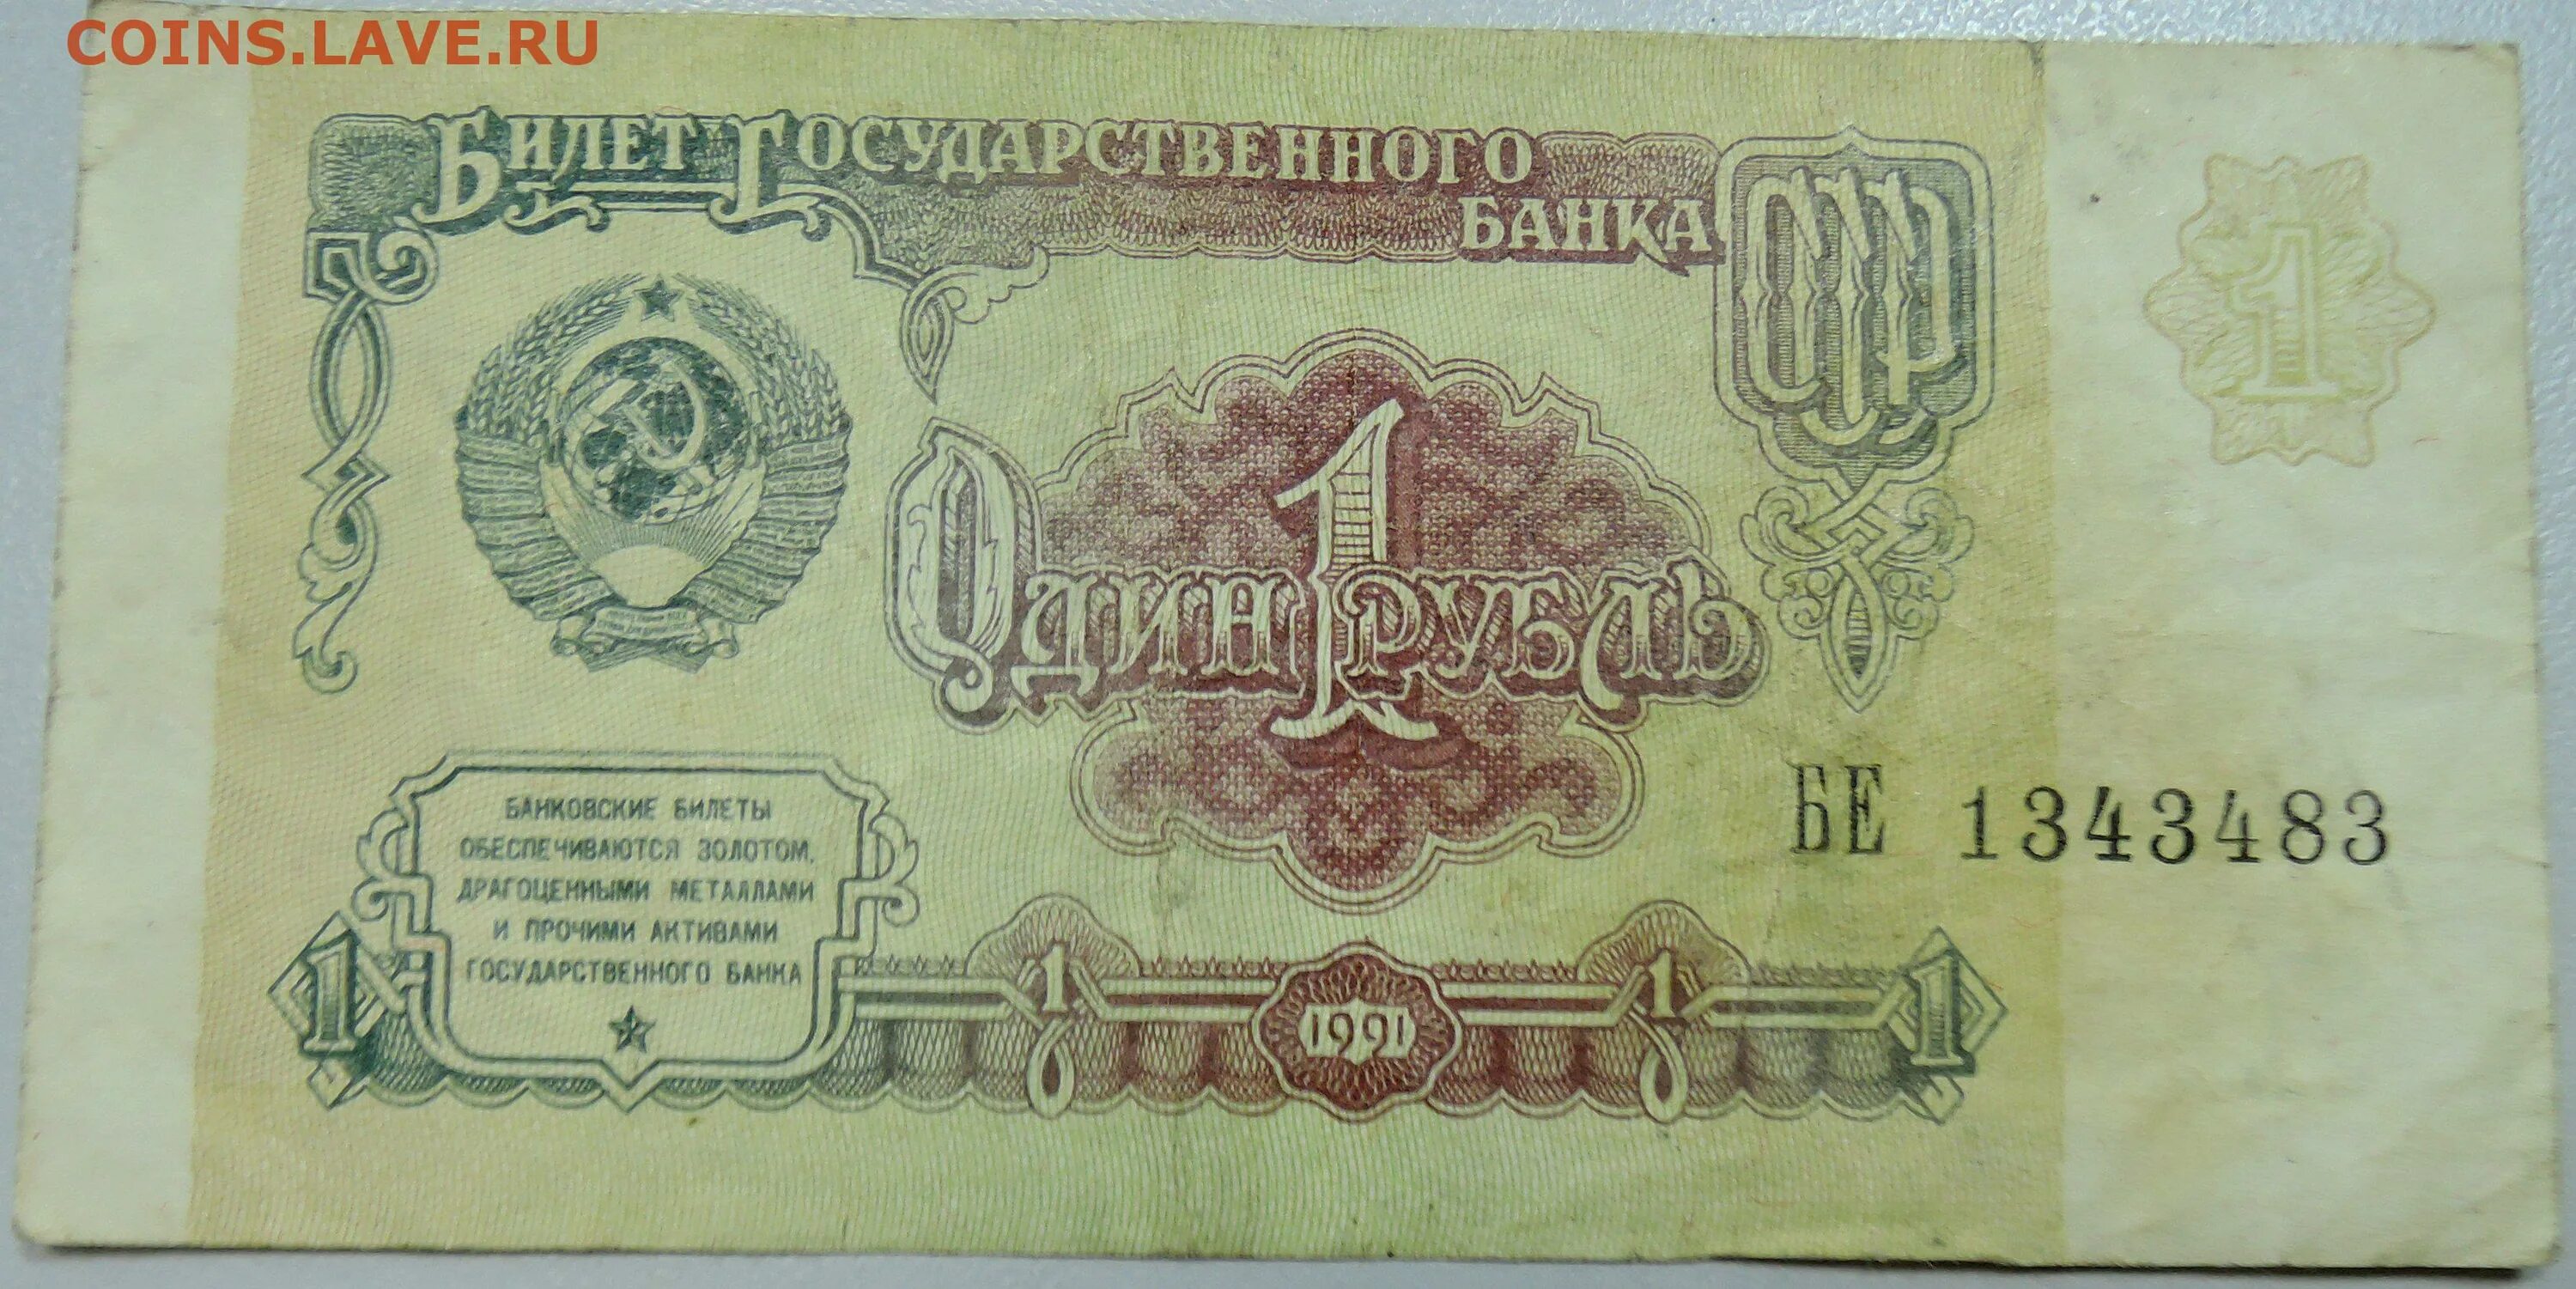 Советский рубль был дороже. Банкноты СССР, 1961 один рубль. Купюра 1 рубль СССР 1991. Банкнота 1 рубль 1991 года. Купюра 1 рубль 1991.